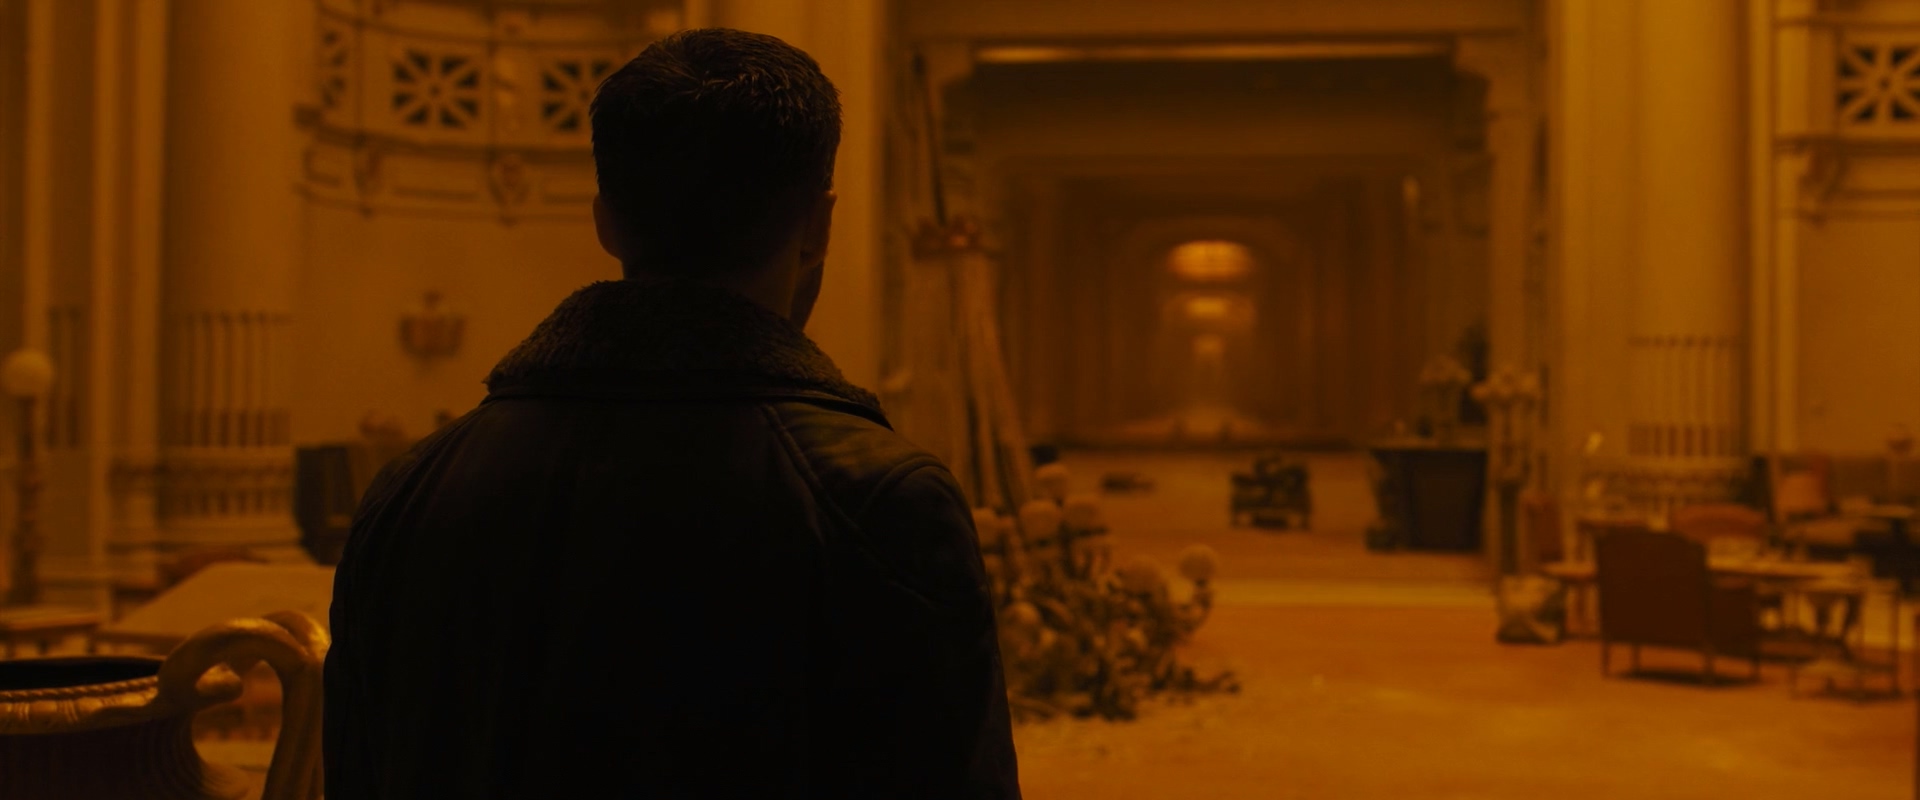 Movie Scenes Blade Runner 2049 Cyberpunk 1920x800